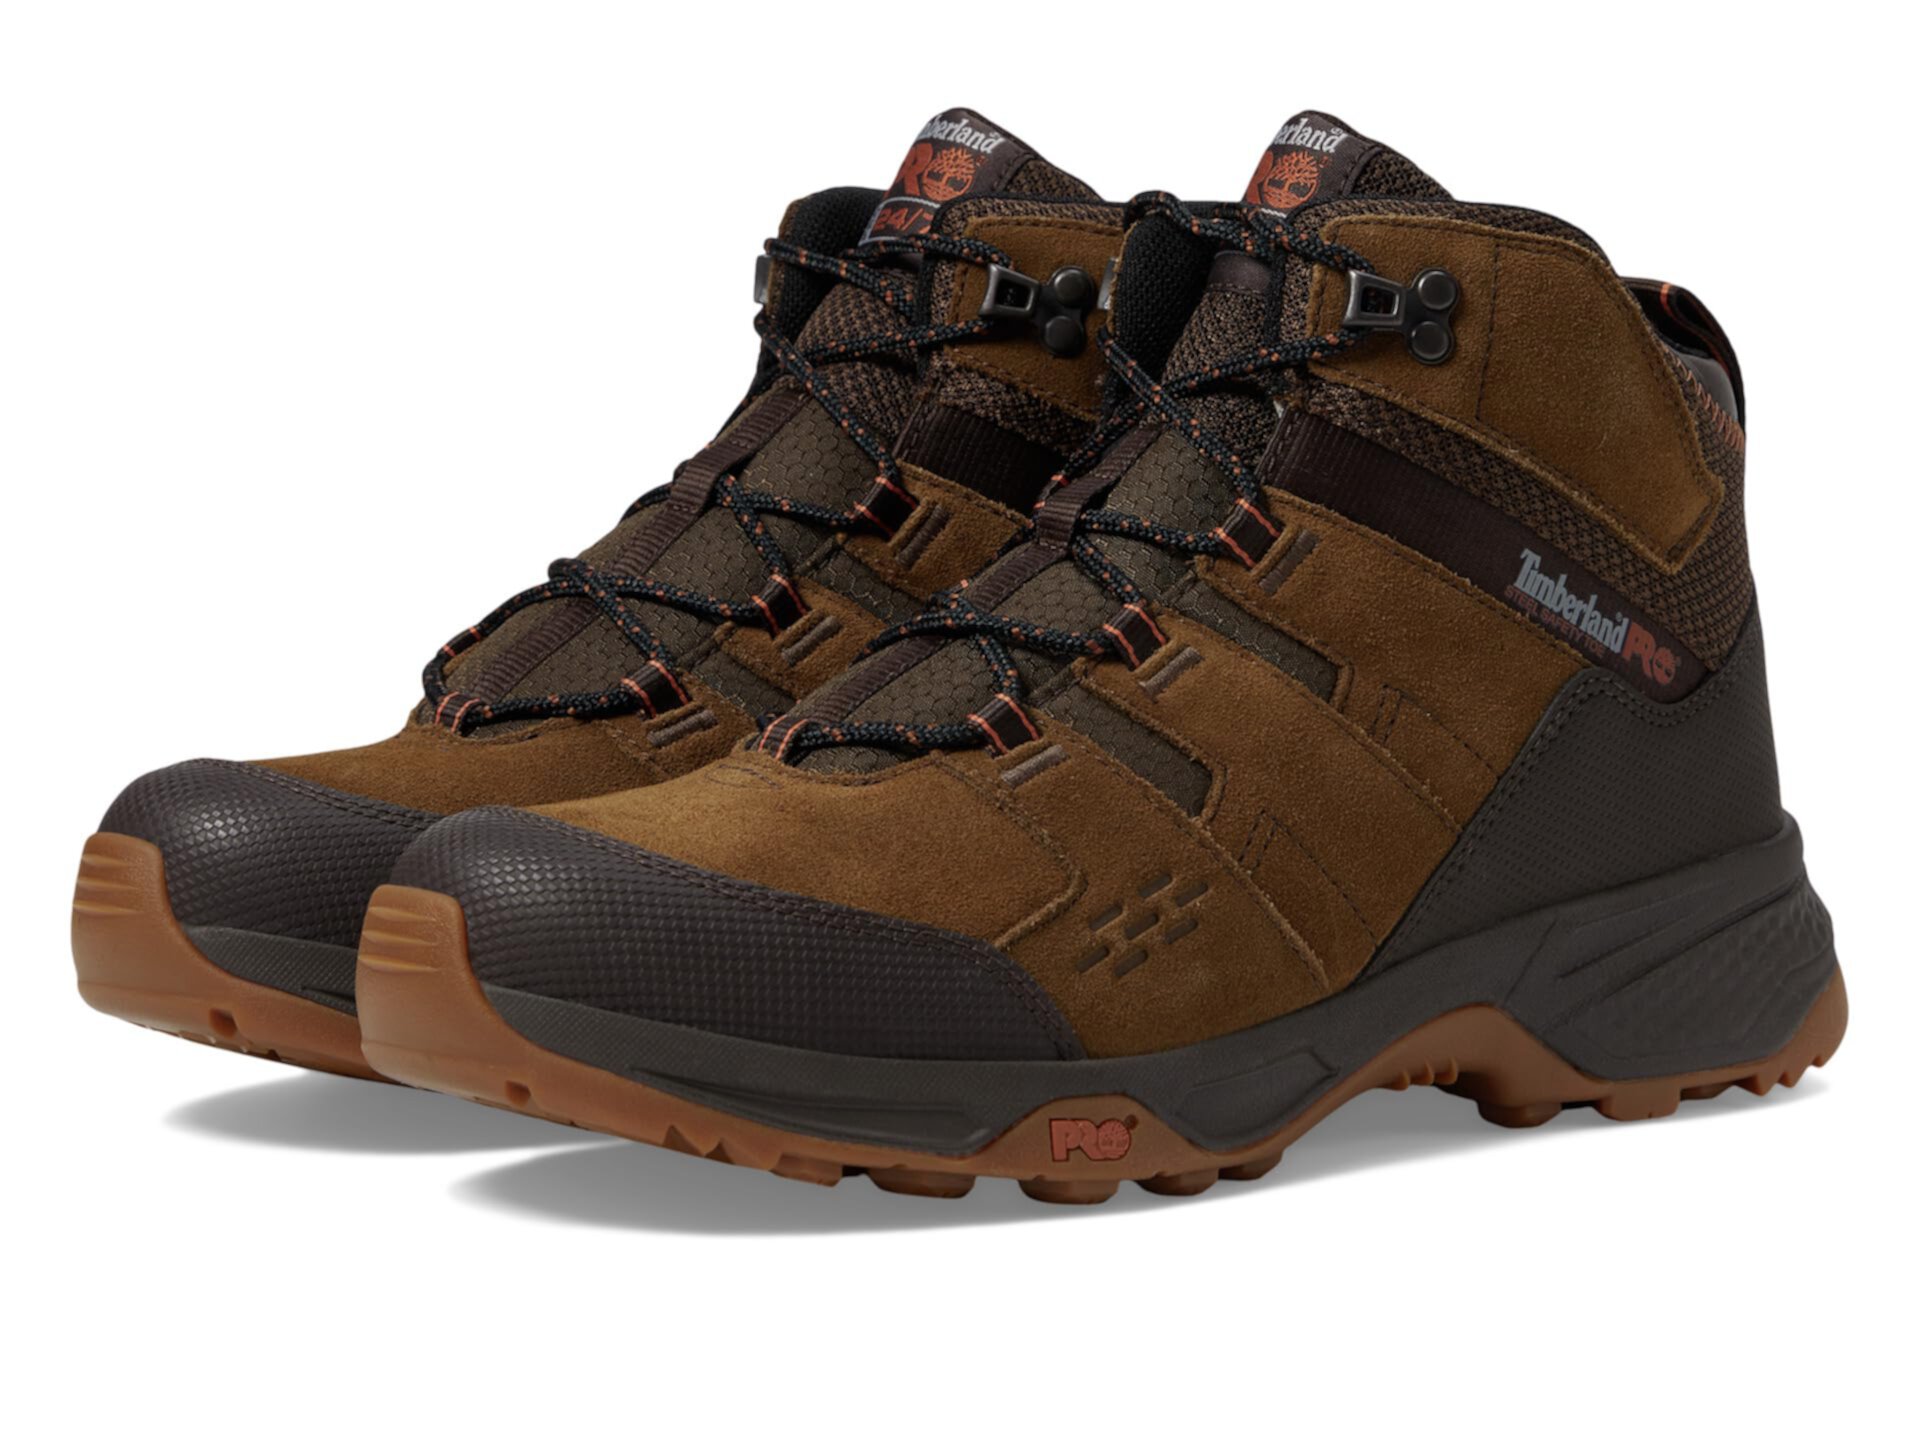 Switchback LT 6-дюймовые туристические ботинки со стальным безопасным носком для промышленных работ Timberland